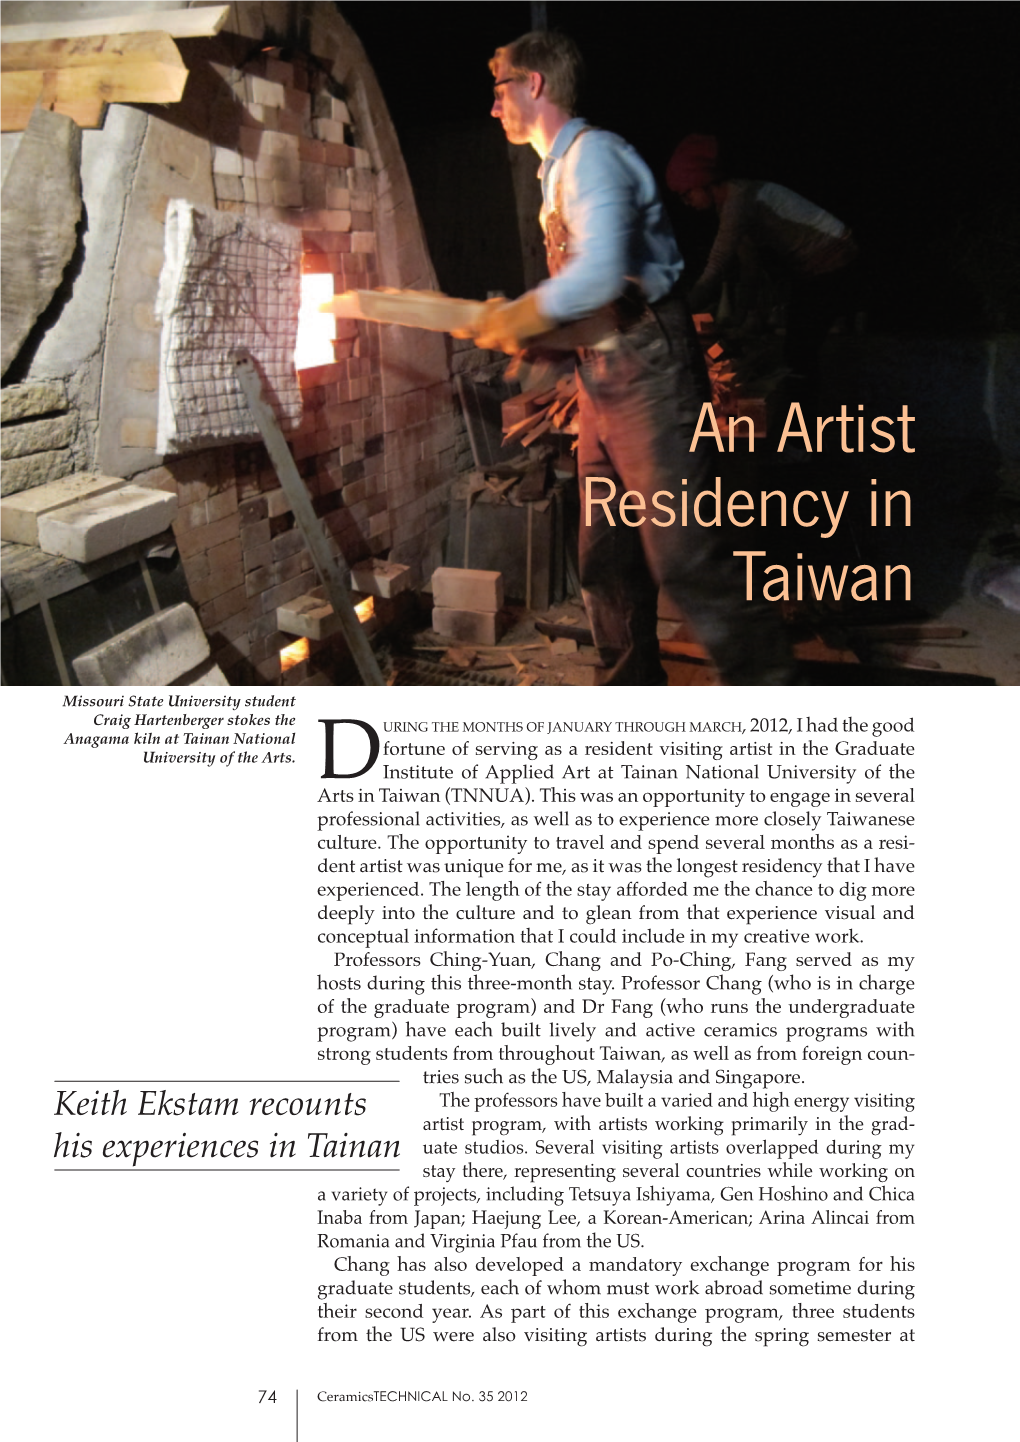 An Artist Residency in Taiwan